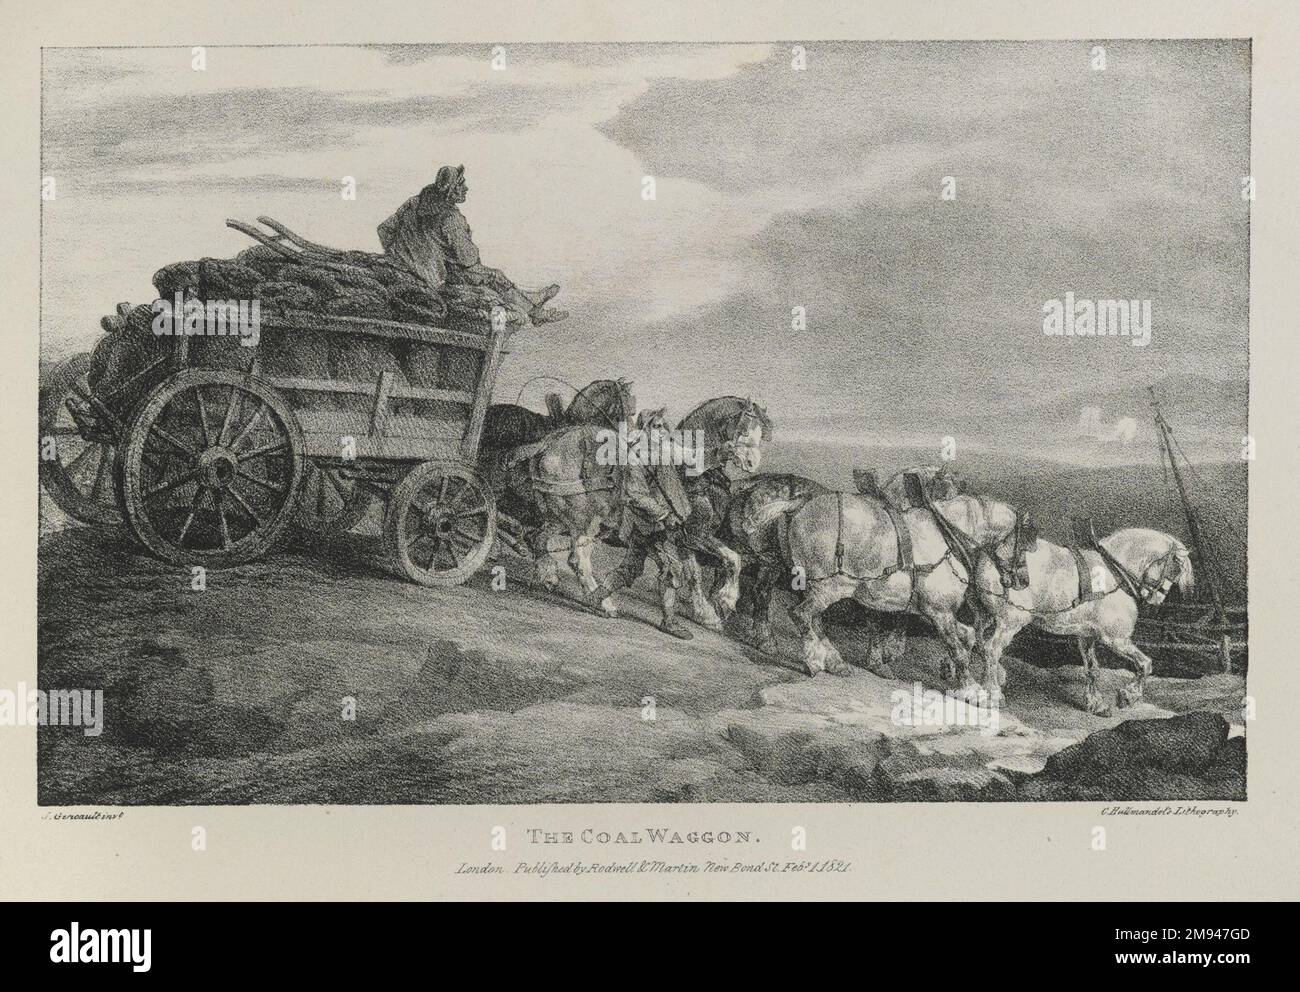 Il carbone Waggon Théodore Géricault (francese, 1791-1829). , 1821. Litografia su carta con spostamento, 7 3/4 x 12 1/4 pollici (19,7 x 31,1 cm). Il carbone Waggon è la decima immagine di una serie di litografie intitolate vari soggetti tratti da vita e su pietra che Théodore Géricault ha prodotto in Inghilterra negli anni '1820s. È uno dei tanti a concentrarsi sui cavalli, uno dei soggetti preferiti di Géricault. Come promemoria dei rapidi cambiamenti culturali dell’era, la stampa raffigura una squadra di cavalli da tiro, simboli di uno stile di vita agricolo tradizionale, che tira un carico di carbone, il materiale che alimenta la Rivoluzione industriale. In funzione Foto Stock